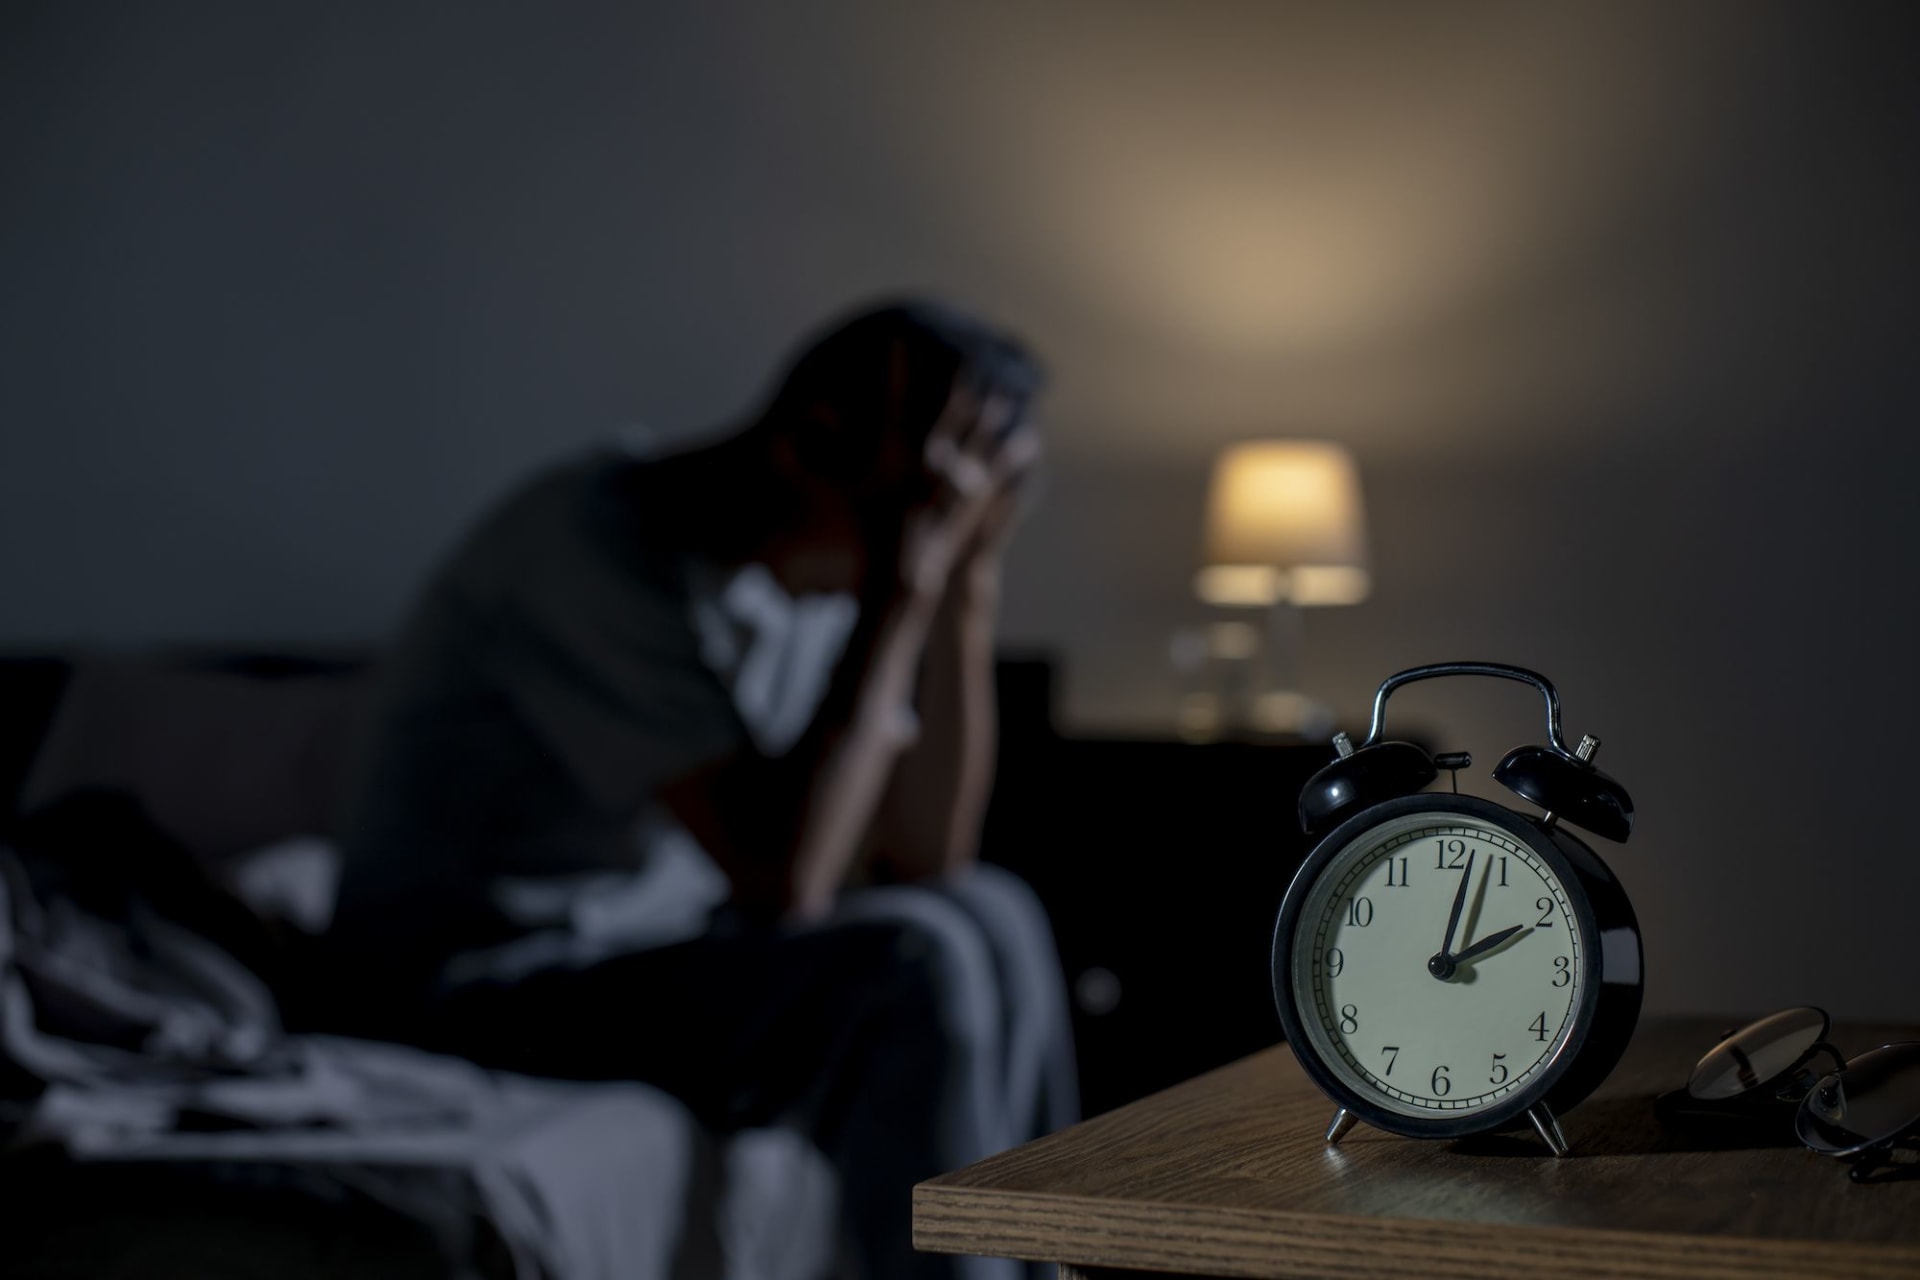 أخصائية: سلوكيات فردية خاطئة وراء اضطراب النوم في رمضان